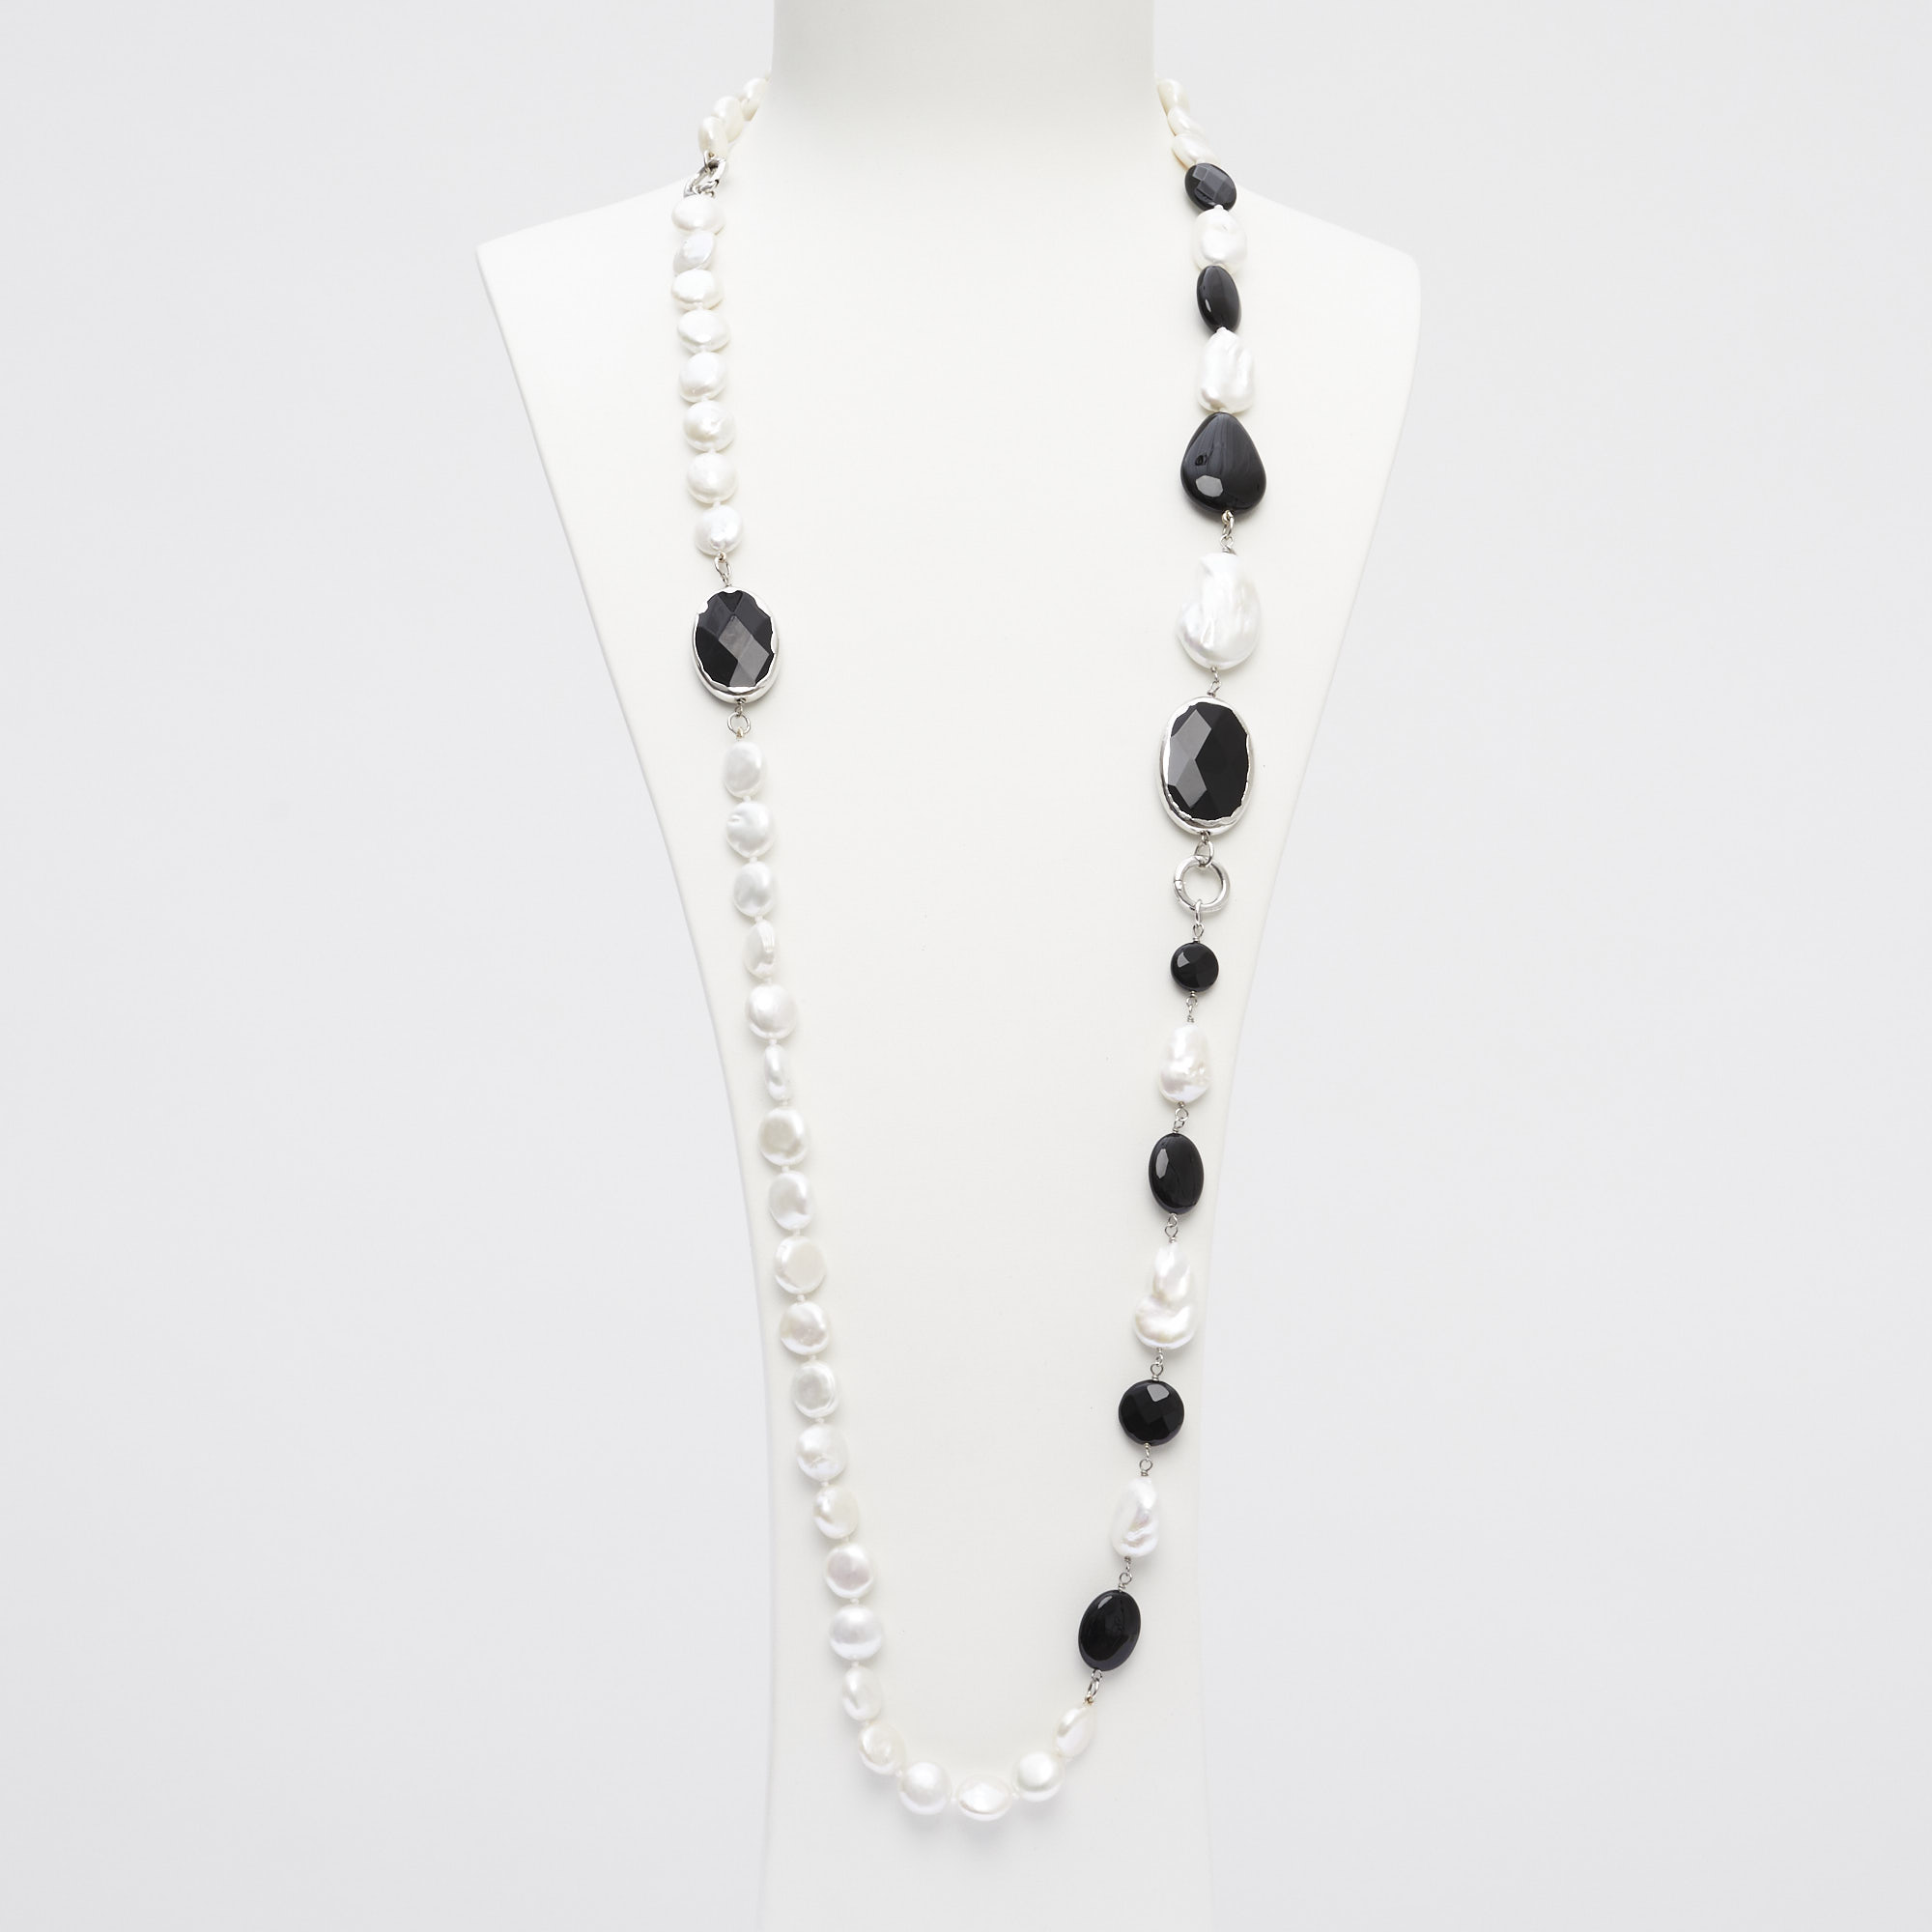 Collana lunga indossabile a due fili, in Perle ed Agata Bianca